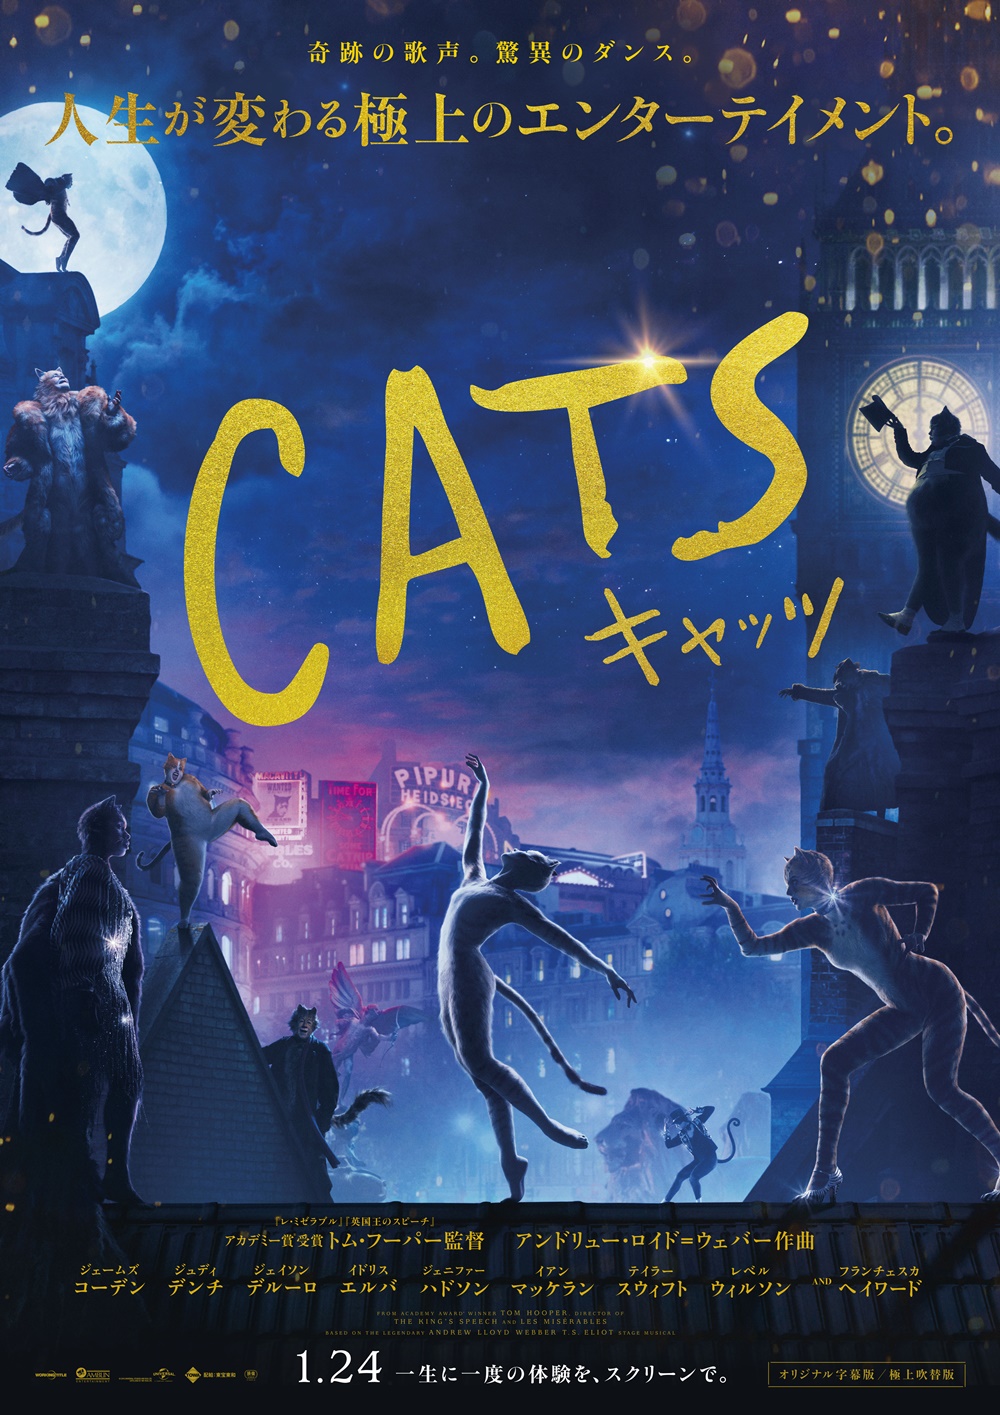 【画像】映画『キャッツ』(原題：Cats) ポスタービジュアル